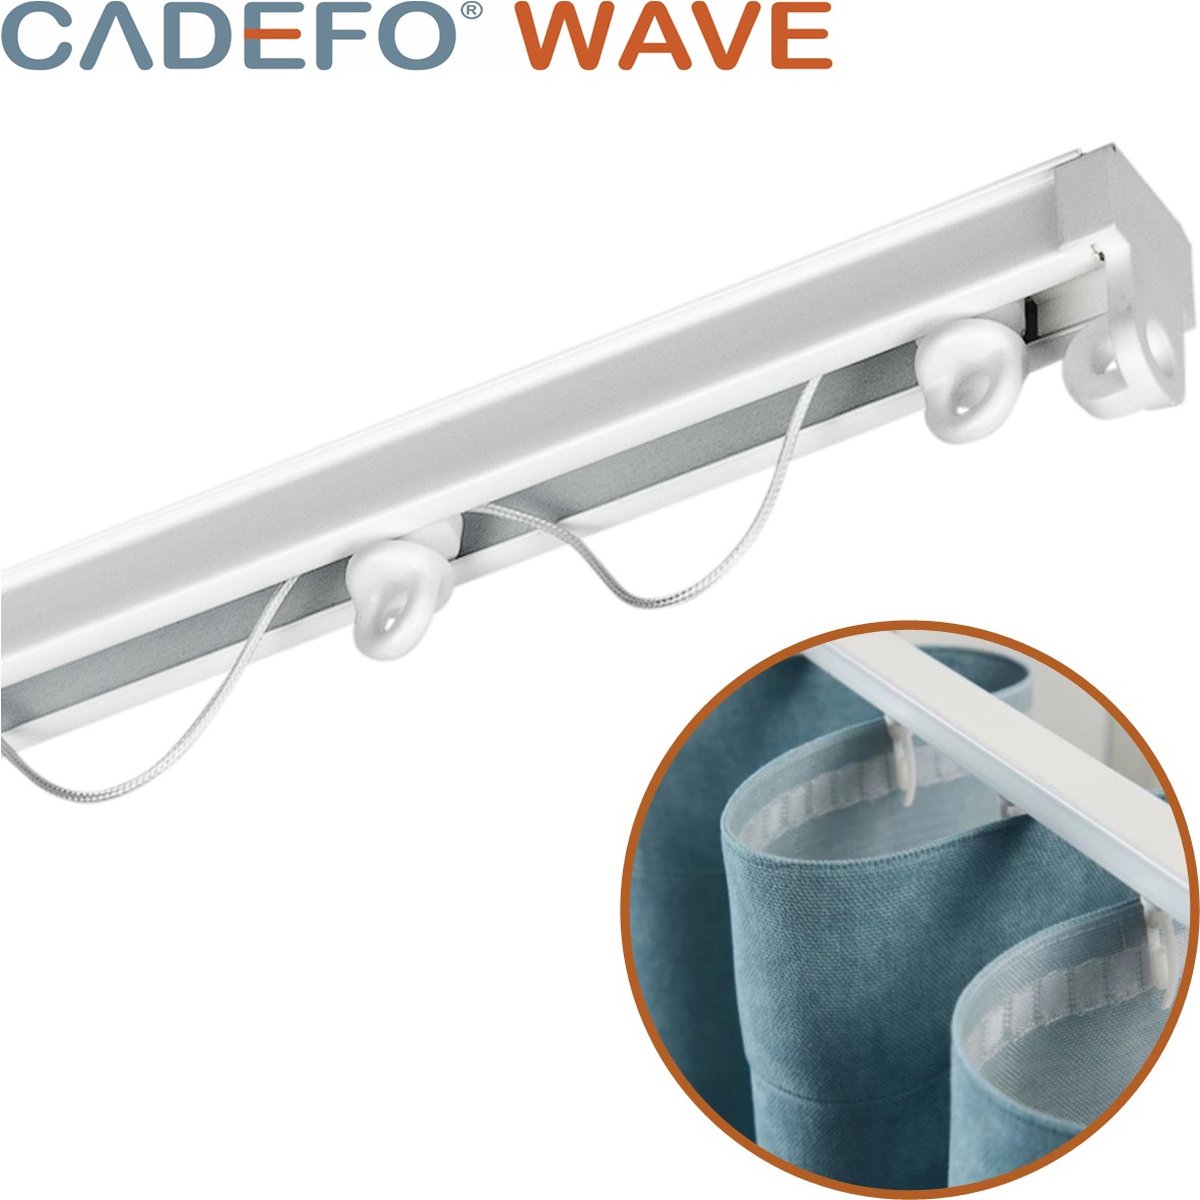 CADEFO WAVE (251 - 300 cm) Gordijnrails - Compleet op maat! - UIT 1 STUK - Leverbaar tot 6 meter - Plafondbevestiging - Lengte 285 cm